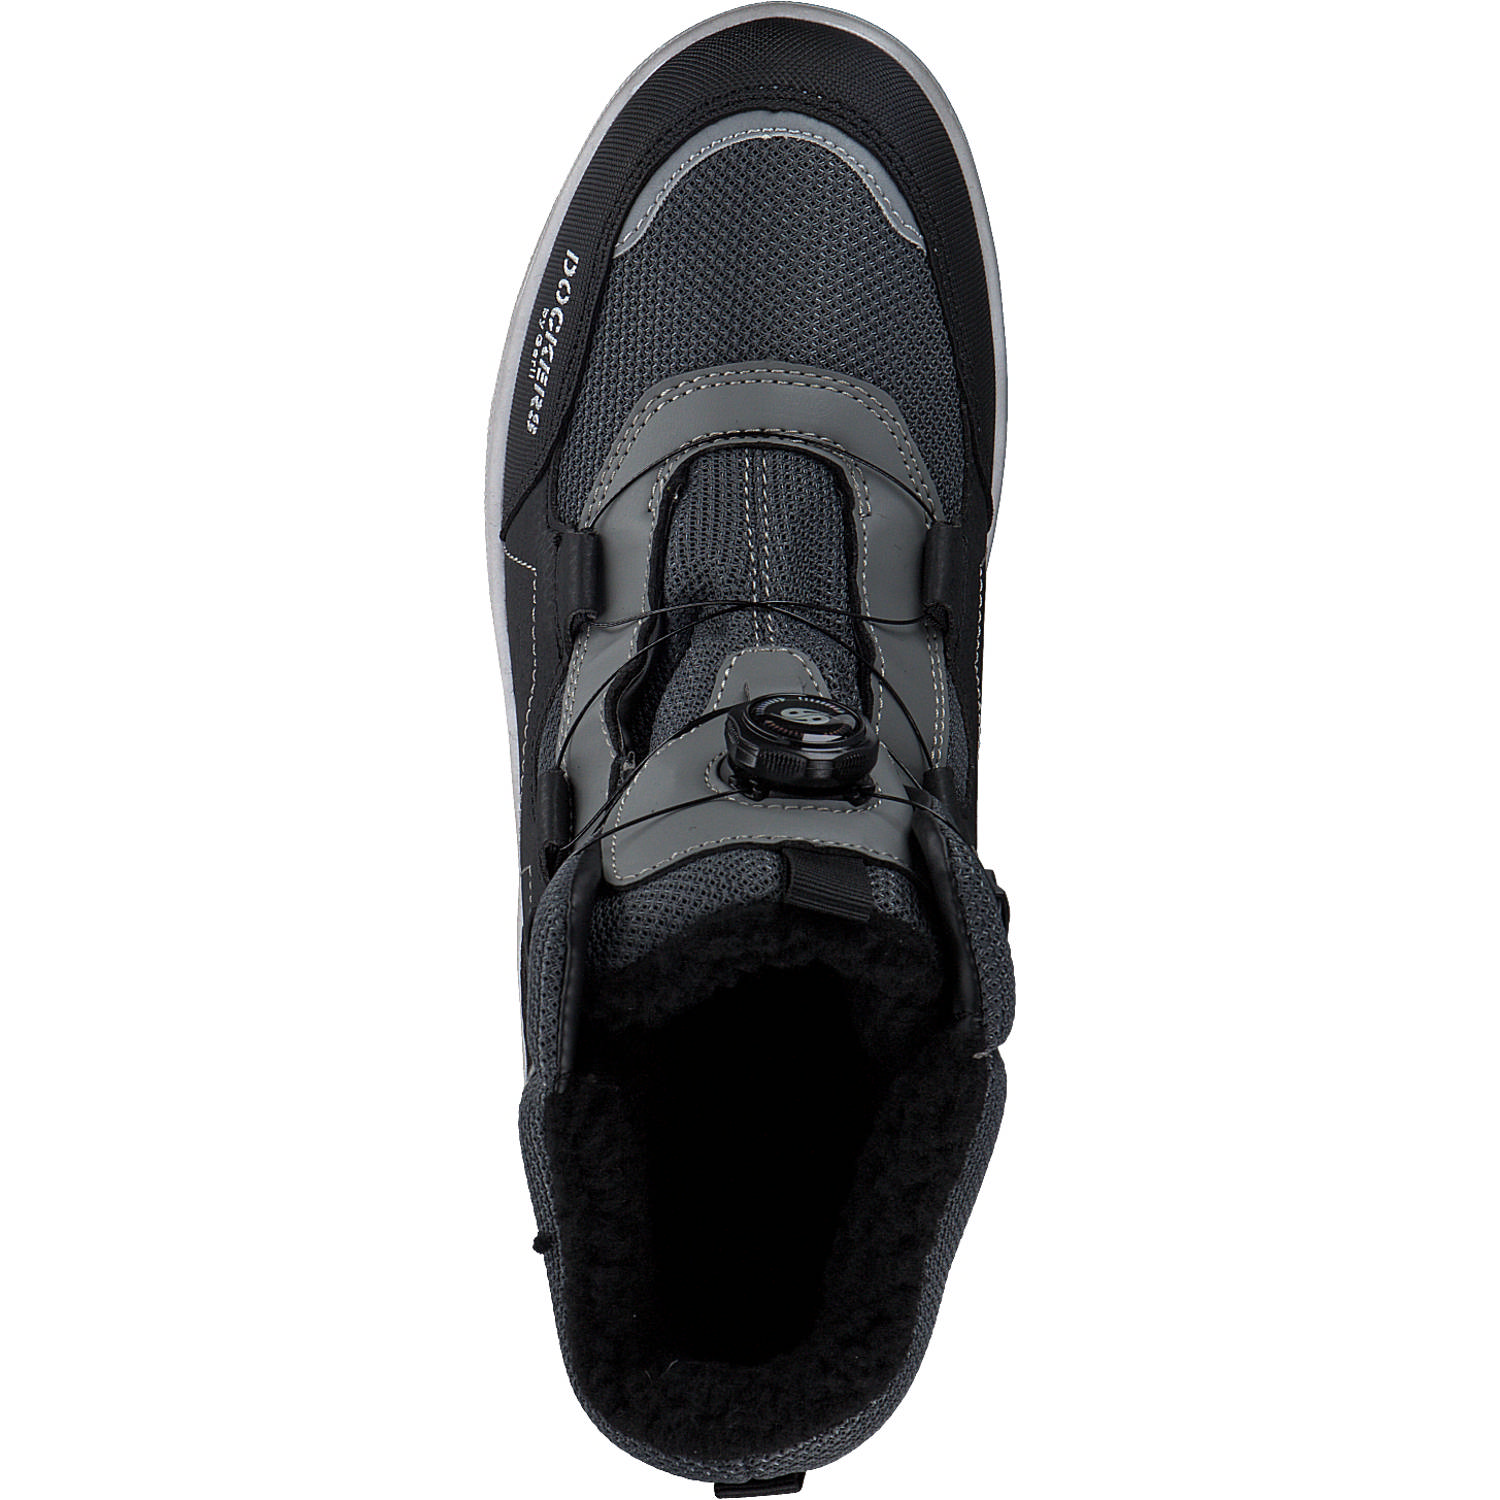 | | | Schuhe Schwarz Marken Dockers 45RO710, High, Herren, Dockers sutor by Sneakers